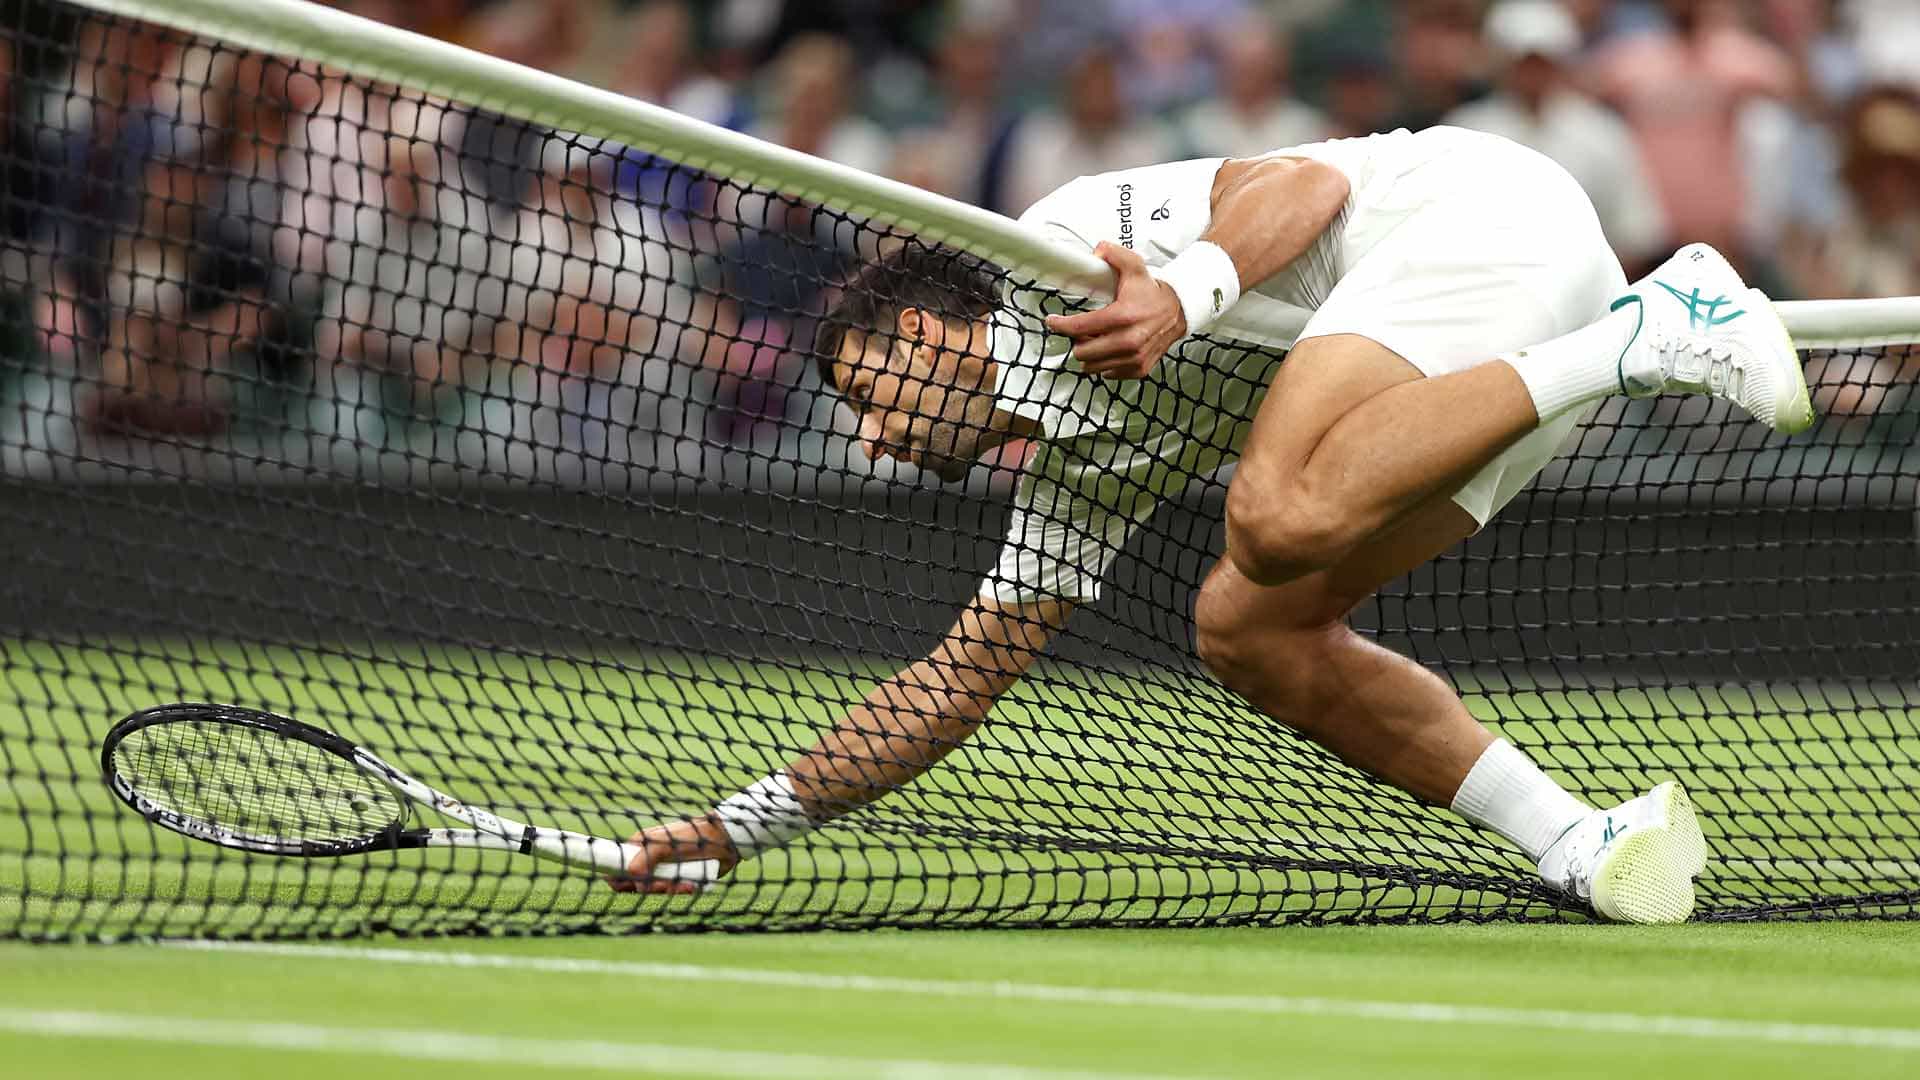 Jogo entre Djokovic e Hurkacz em Wimbledon é suspenso neste domingo; saiba  mais